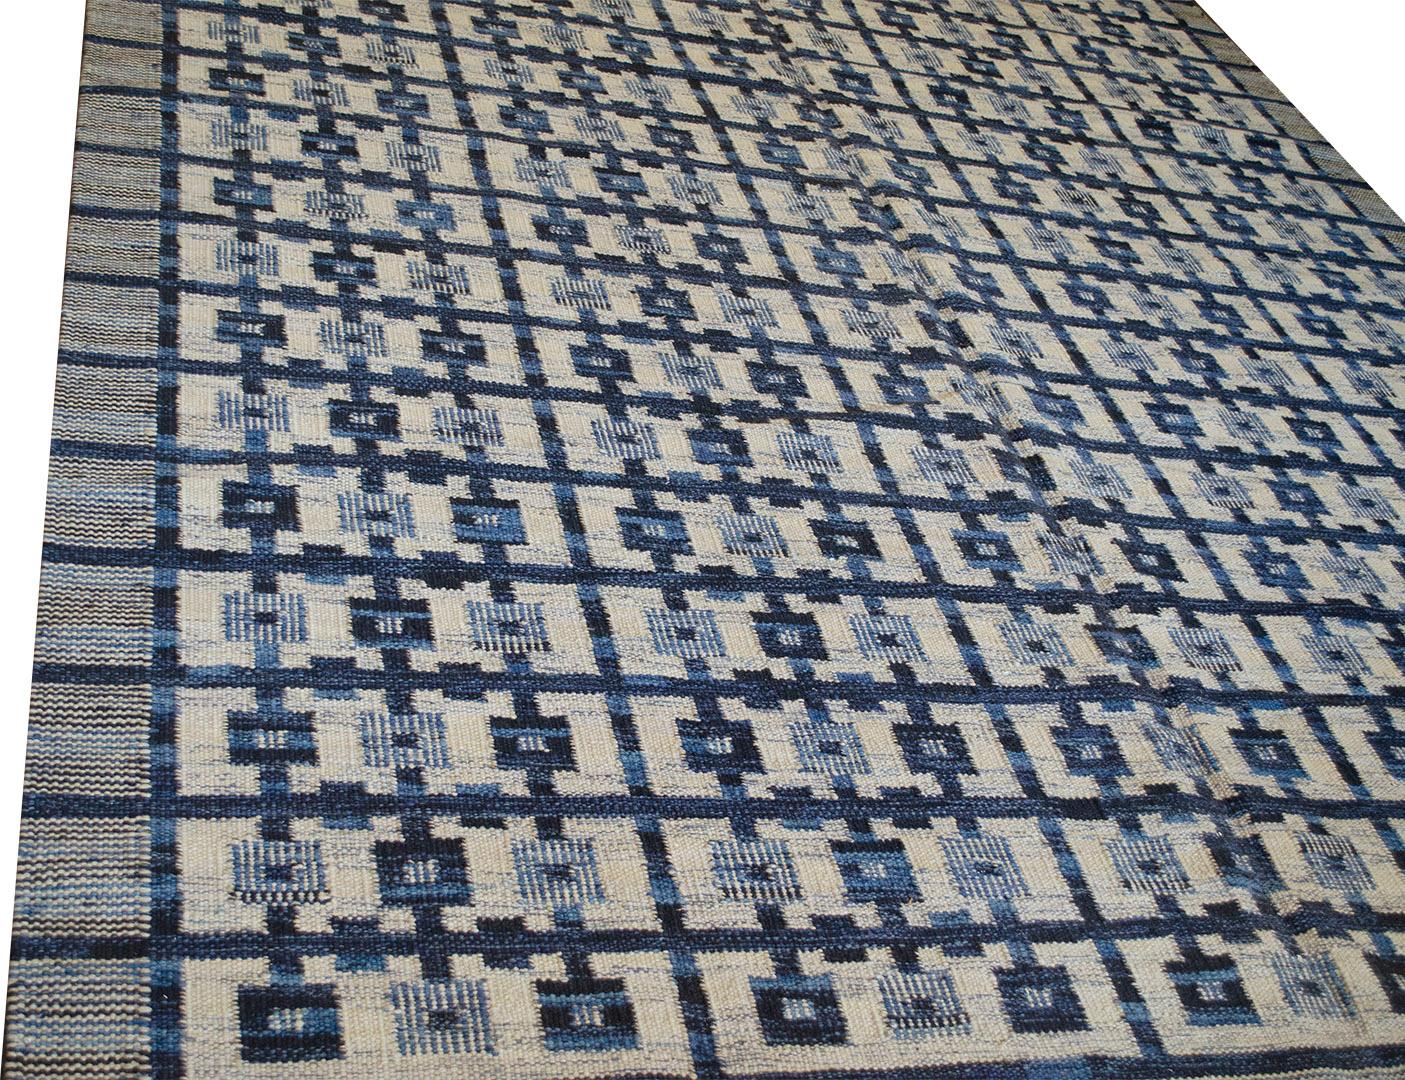 La collection suédoise s'inspire principalement des tapis suédois vintage à tissage plat, dont les motifs géométriques sont plus que jamais d'actualité au XXIe siècle. La collection moderne utilise un certain nombre de techniques de tissage à plat,